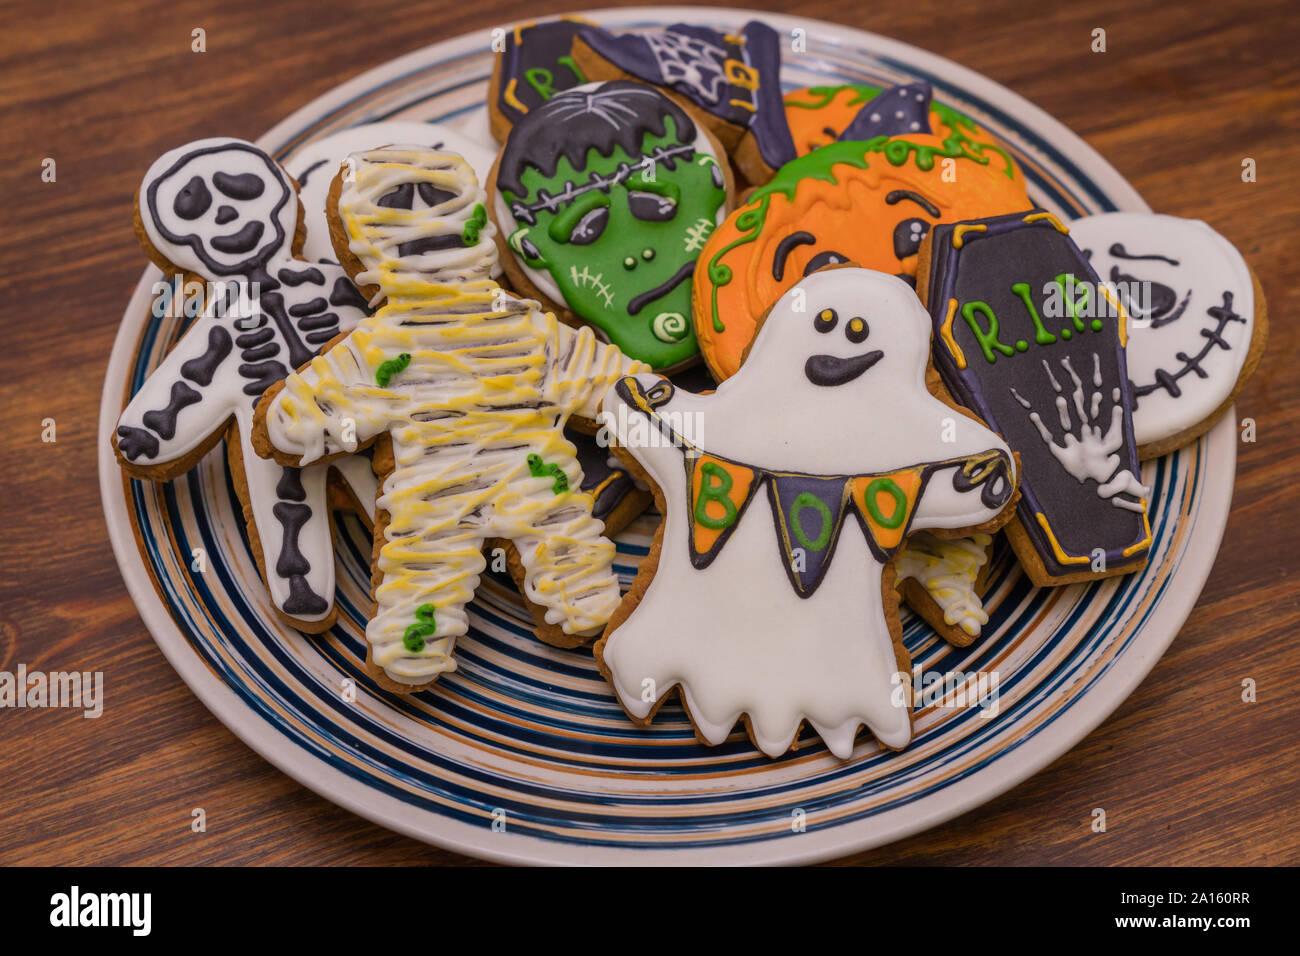 La plaque avec les cookies pour Halloween festive party Banque D'Images